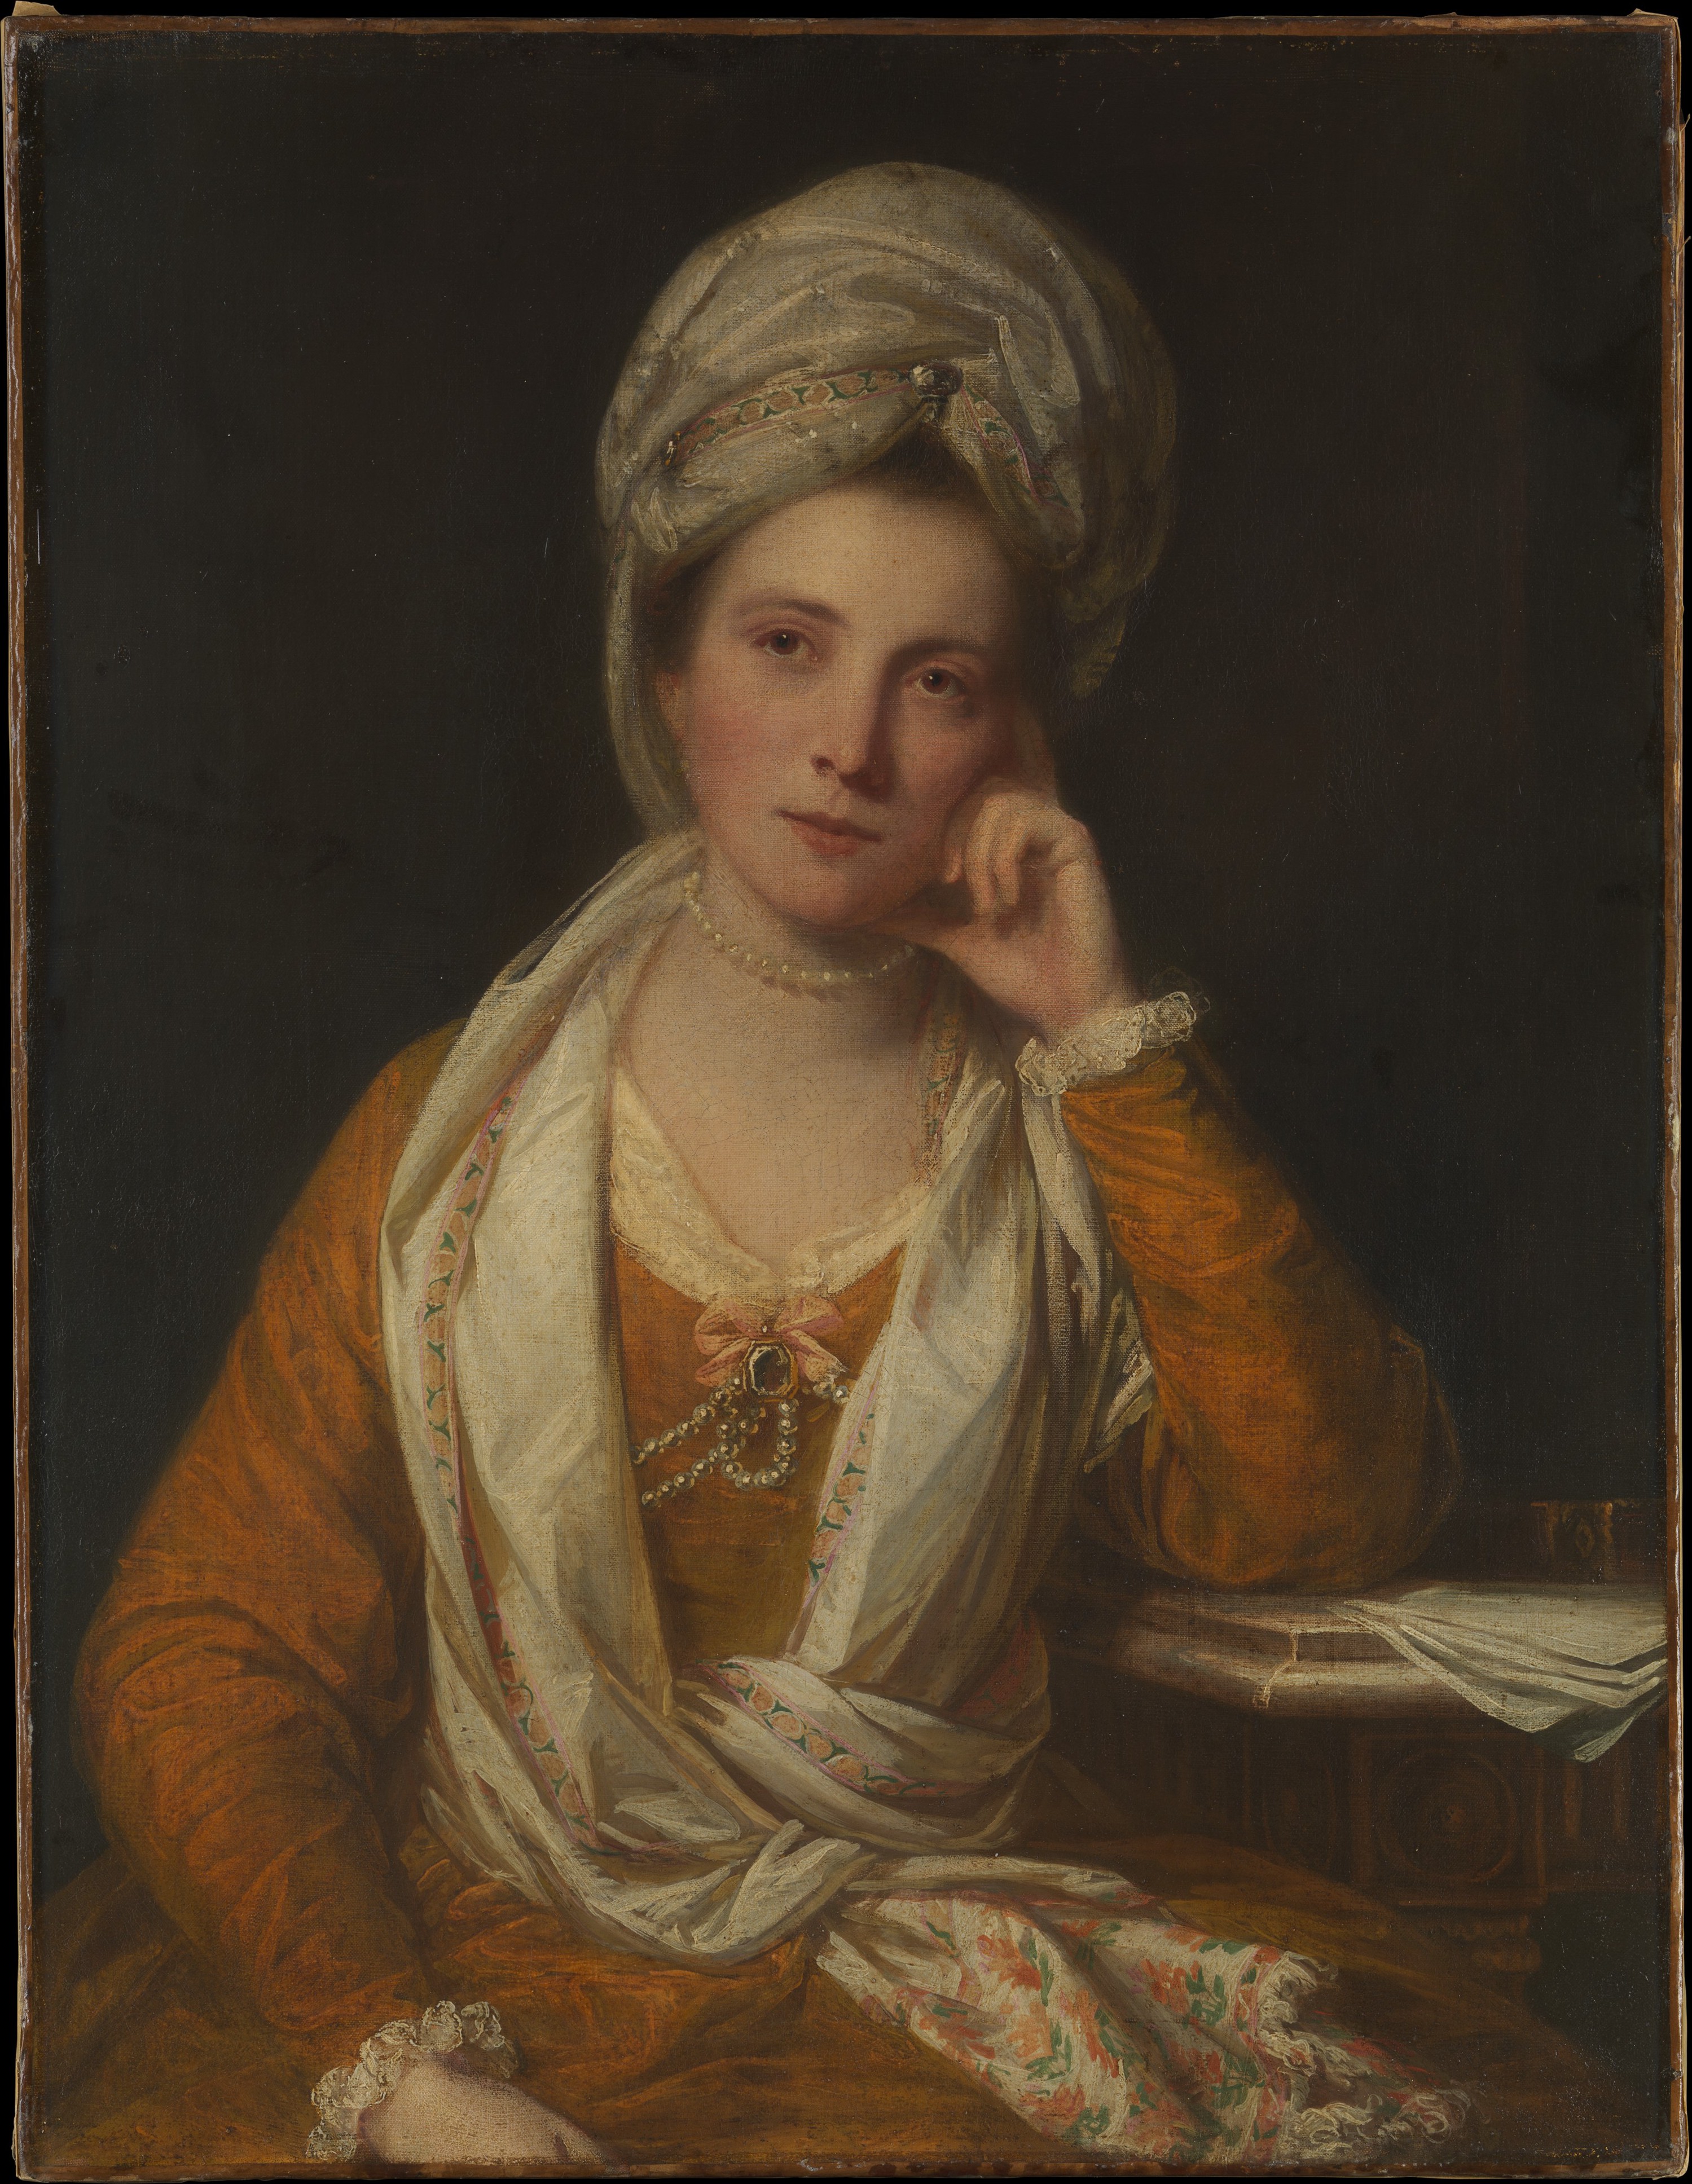 Mrs. Horton, später Viscountess Maynard by Joshua Reynolds - um 1770 - 92.1 x 71.1 cm Metropolitan Museum of Art